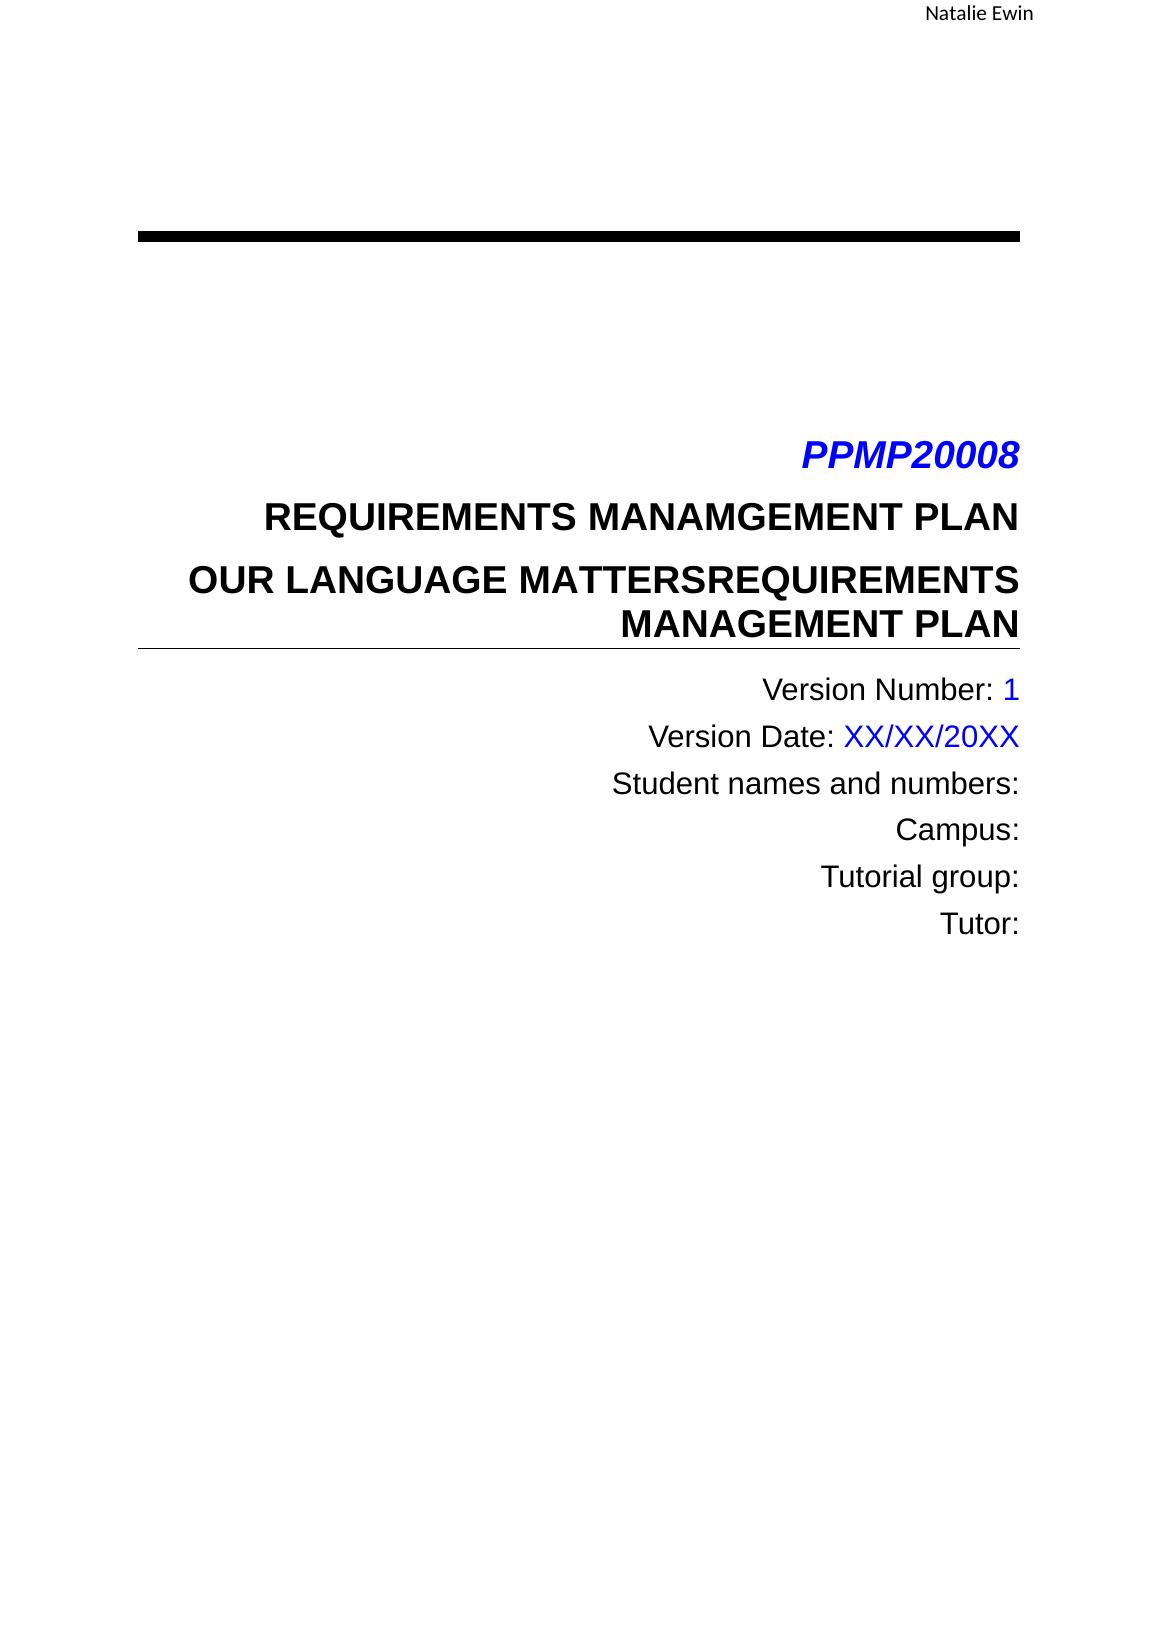 MAN 4583 - Management Plan Assignment_1